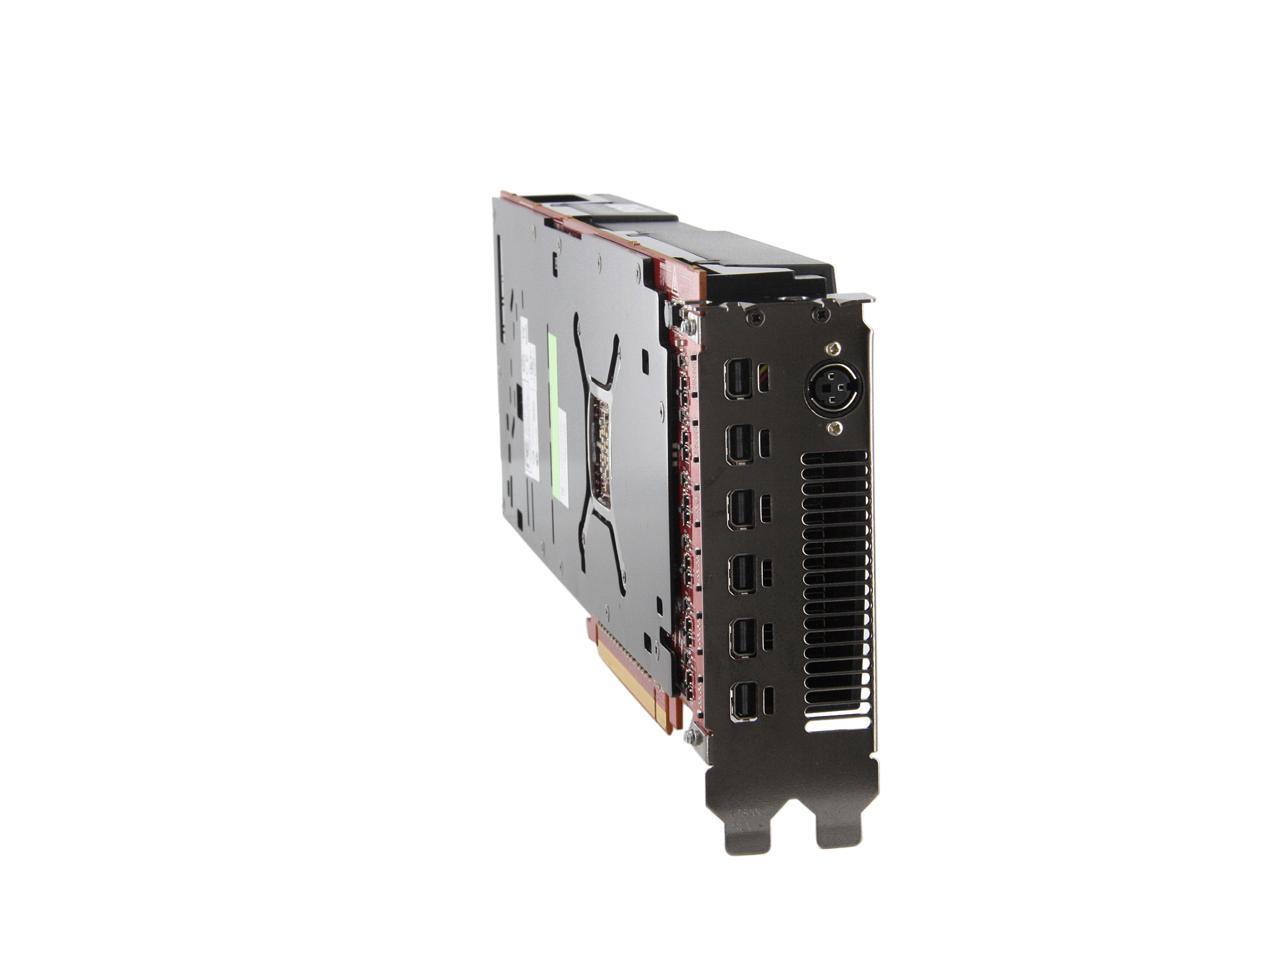 AMD FirePro W9100 100-505725 16GB 512-bit GDDR5 PCI Express 3.0 